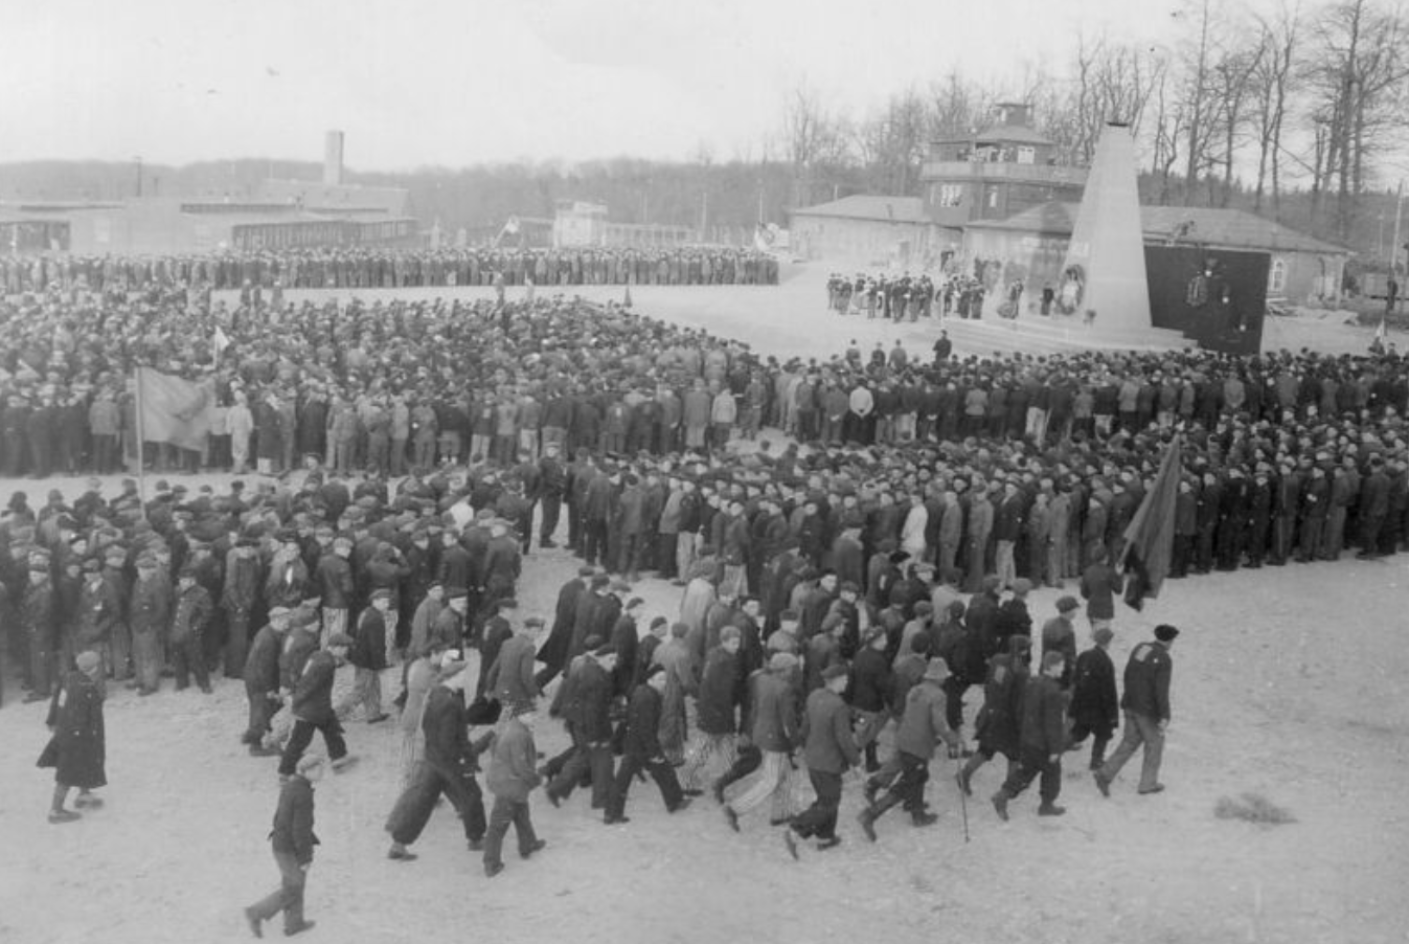 Befreite Häftlinge bei der ersten Gedenkfeier für die Toten des KZ Buchenwald. Der Appellplatz ist dicht an dicht mit Menschen gefüllt. Im Hintergrund ist das provisorische Mahnmal für die Toten. Vereinzelt Fahnen.